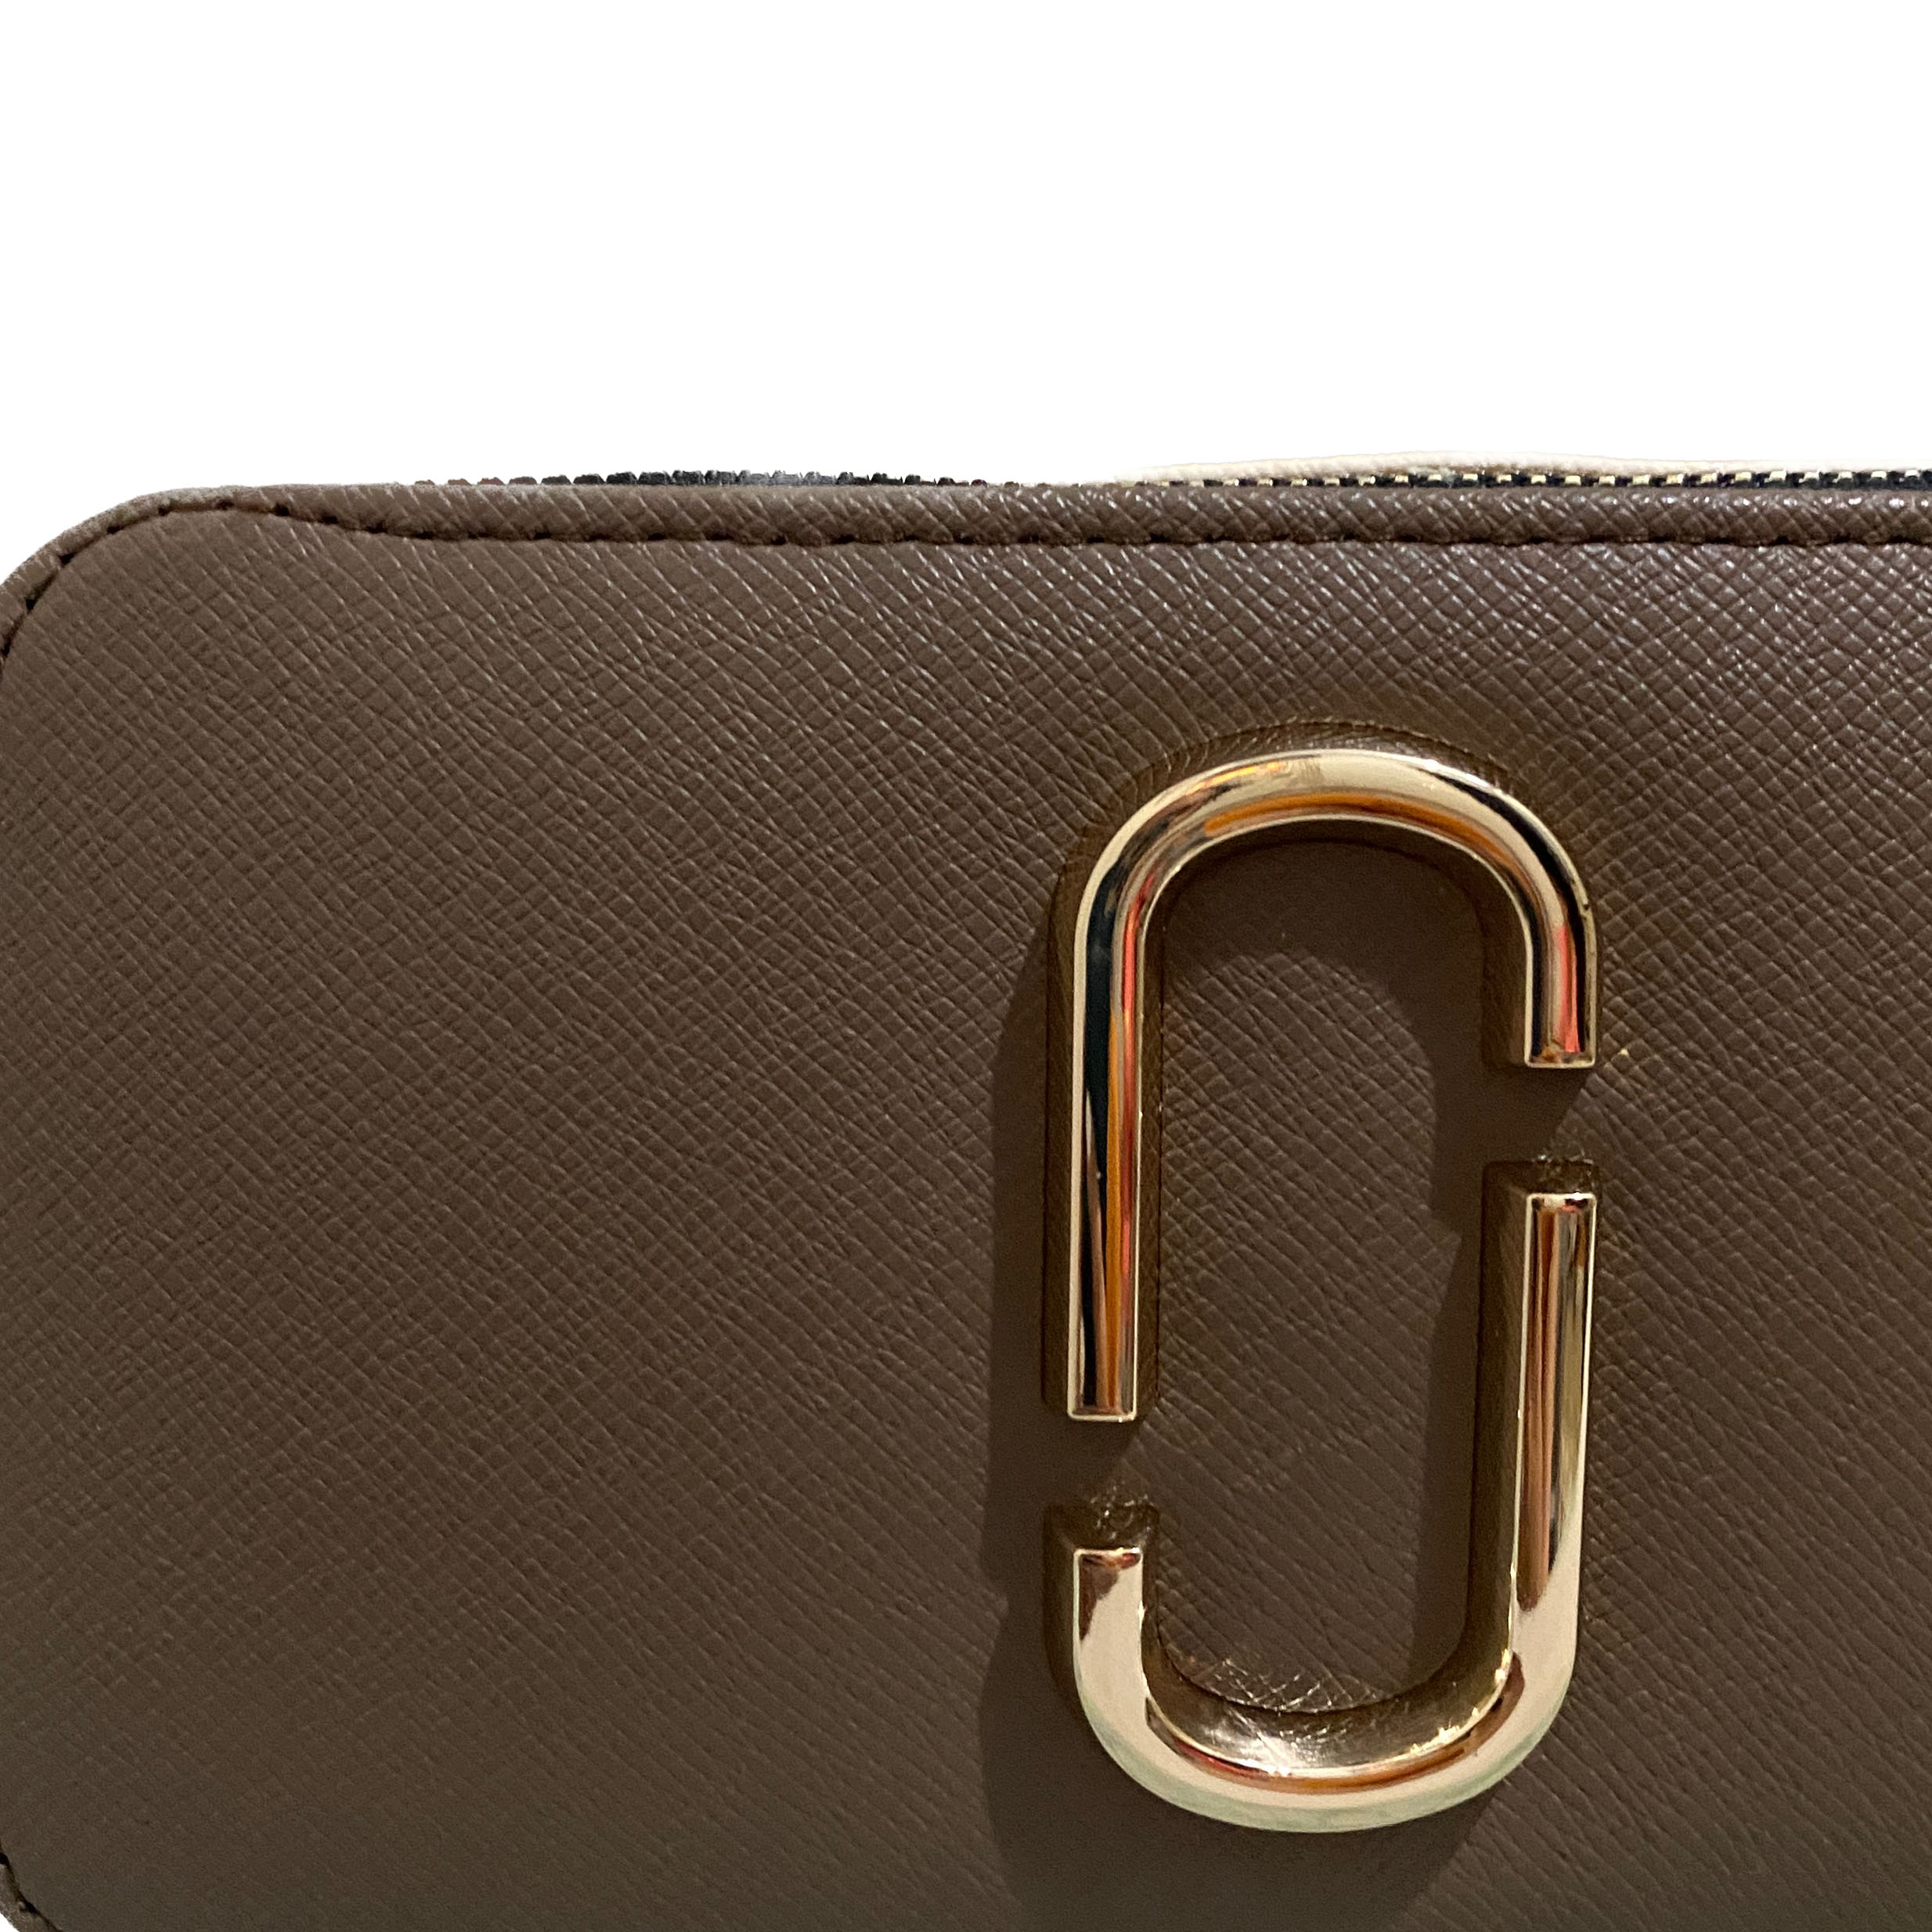 کیف دوشی زنانه مارک جکوبس مدل 183 -  - 8